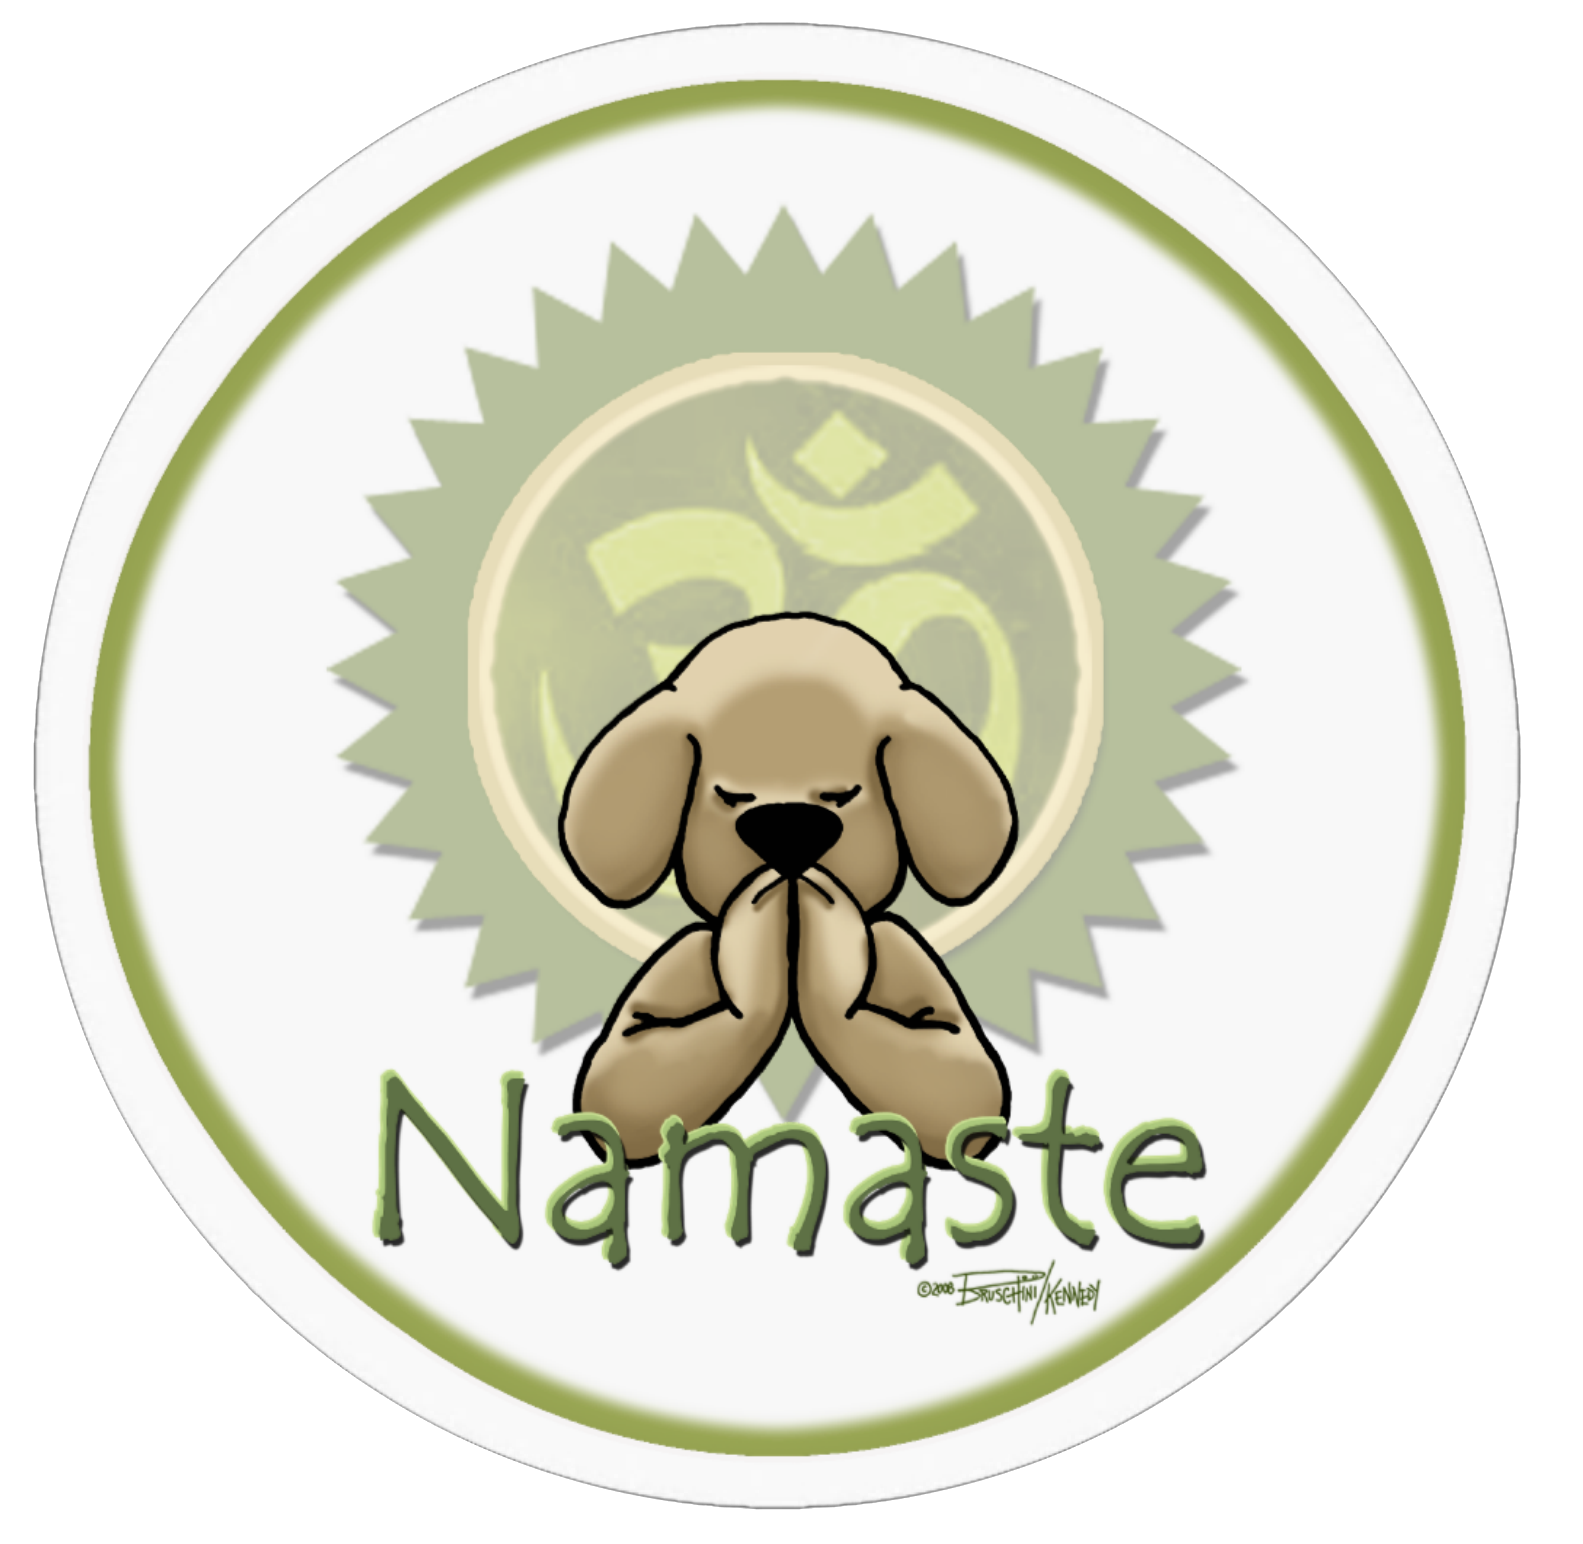 Namaste Dog Meditation Sticker PNG image